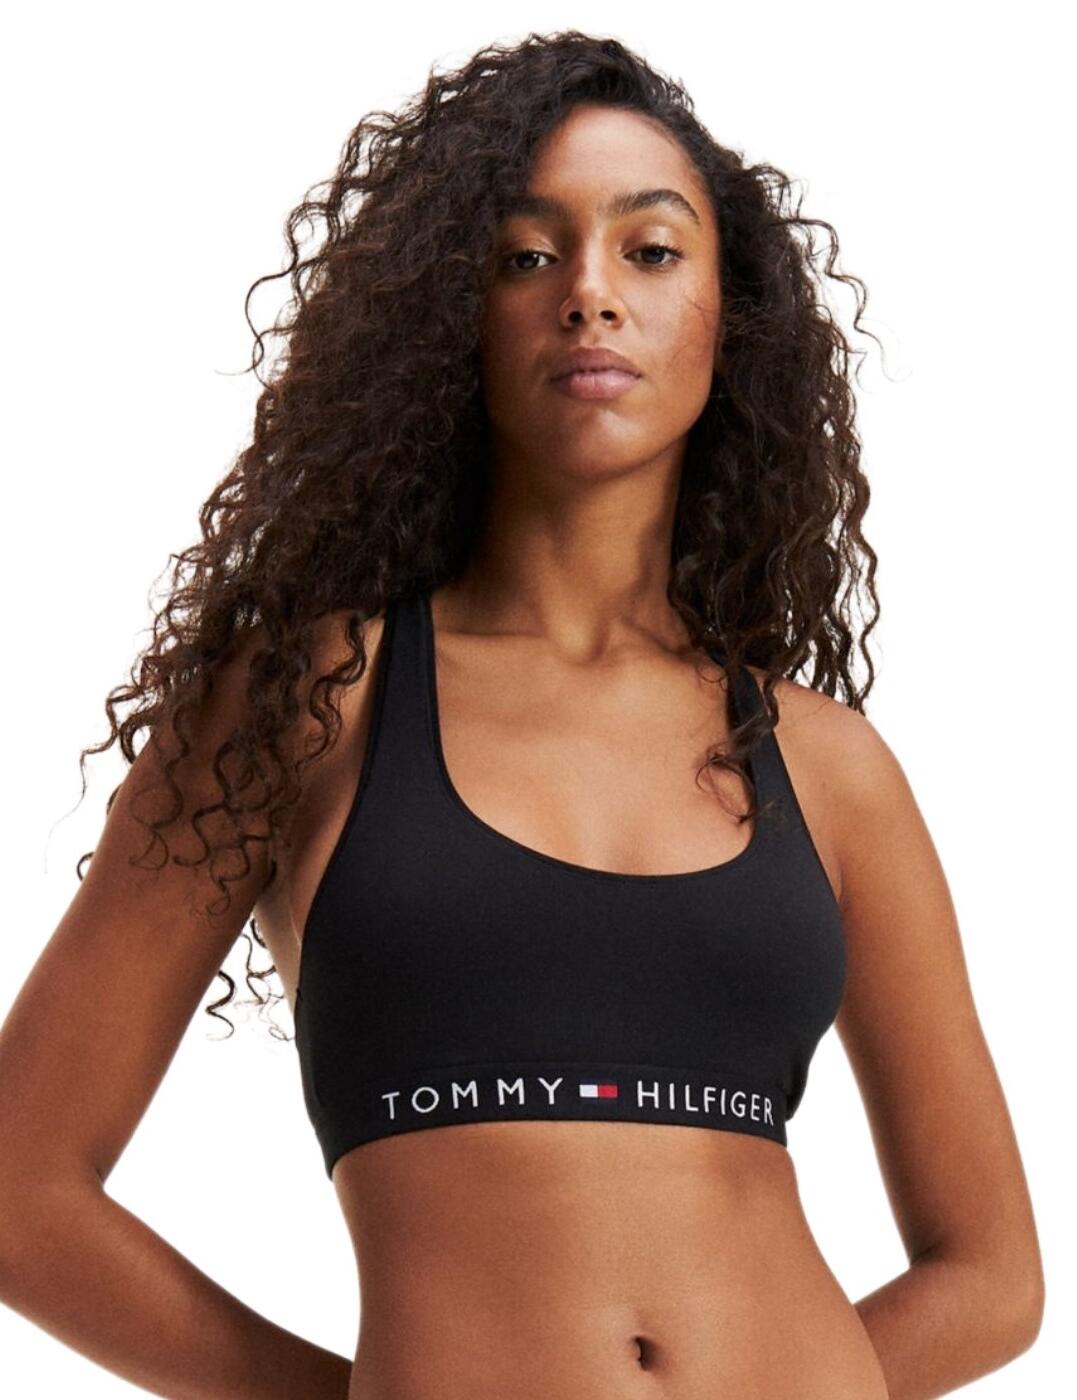 Tommy Hilfiger Women's Sports Bras & Underwear